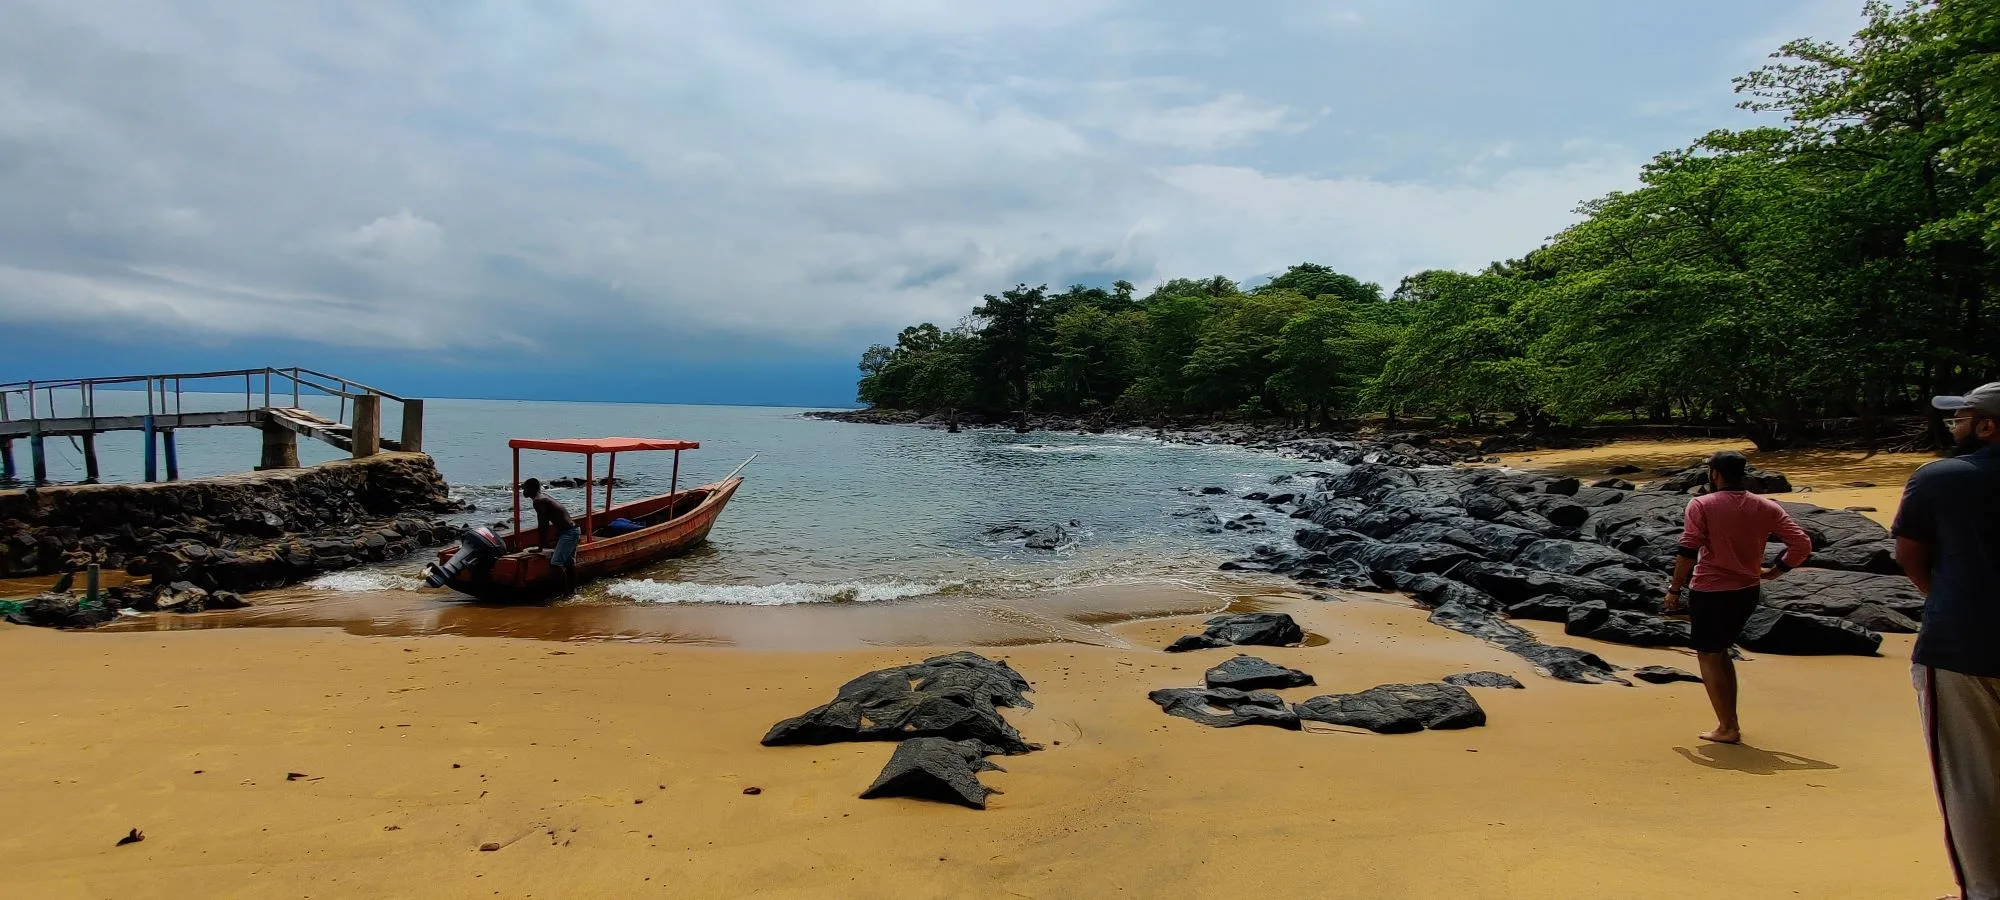 Banana Islands- Sierra Leone